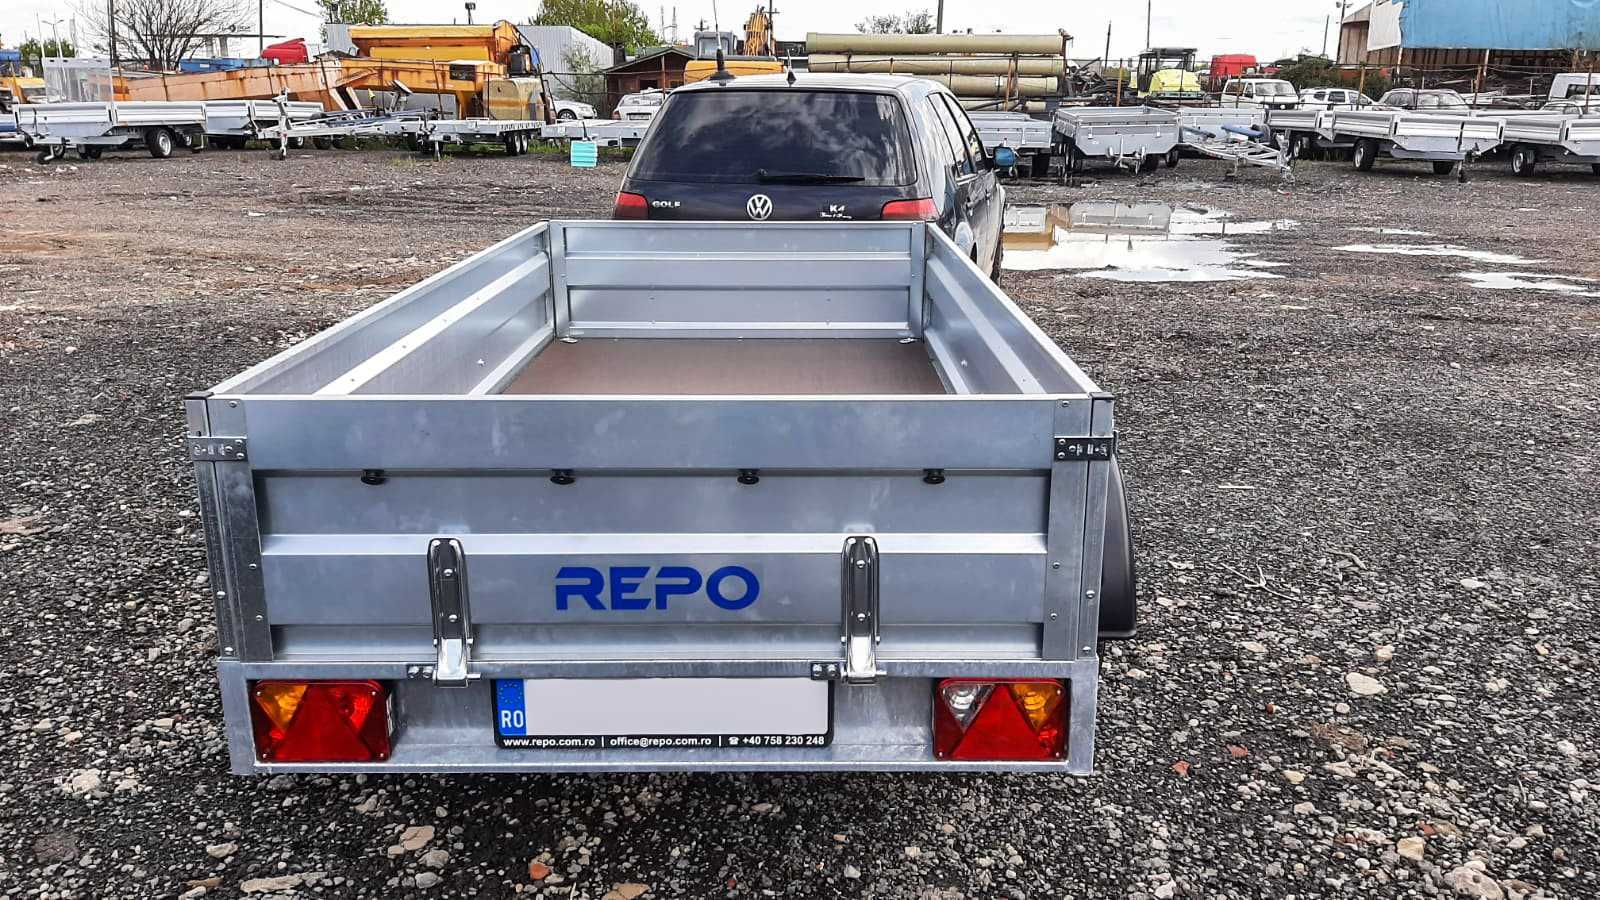 Remorca transport ATV 750 kg REPO cu prelata, basculabila, carte rar,